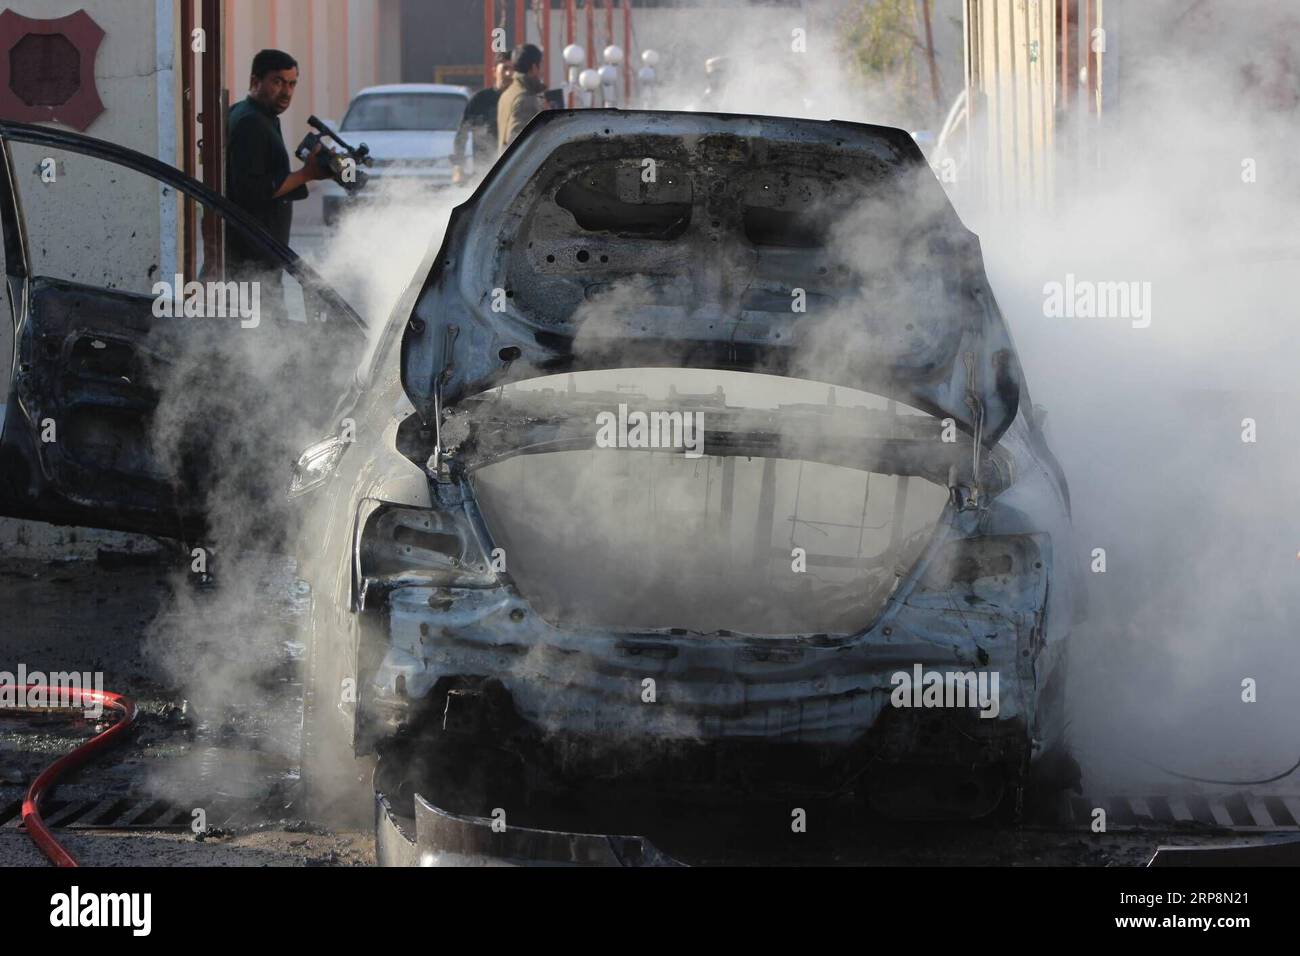 (190312) -- LASHKAR GAH, 12. März 2019 -- Ein verbranntes Auto wird nach einer Explosion in Lashkar Gah, der Hauptstadt der Provinz Helmand, im Süden Afghanistans, am 12. März 2019 gesehen. Ein lokaler Journalist wurde bei einem Bombenanschlag in Lashkar Gah am Dienstag schwer verletzt, sagte die örtliche Polizei. Abdul Aziz Safdary) AFGHANISTAN-HELMAND-BLAST XinhuaxKabul PUBLICATIONxNOTxINxCHN Stockfoto